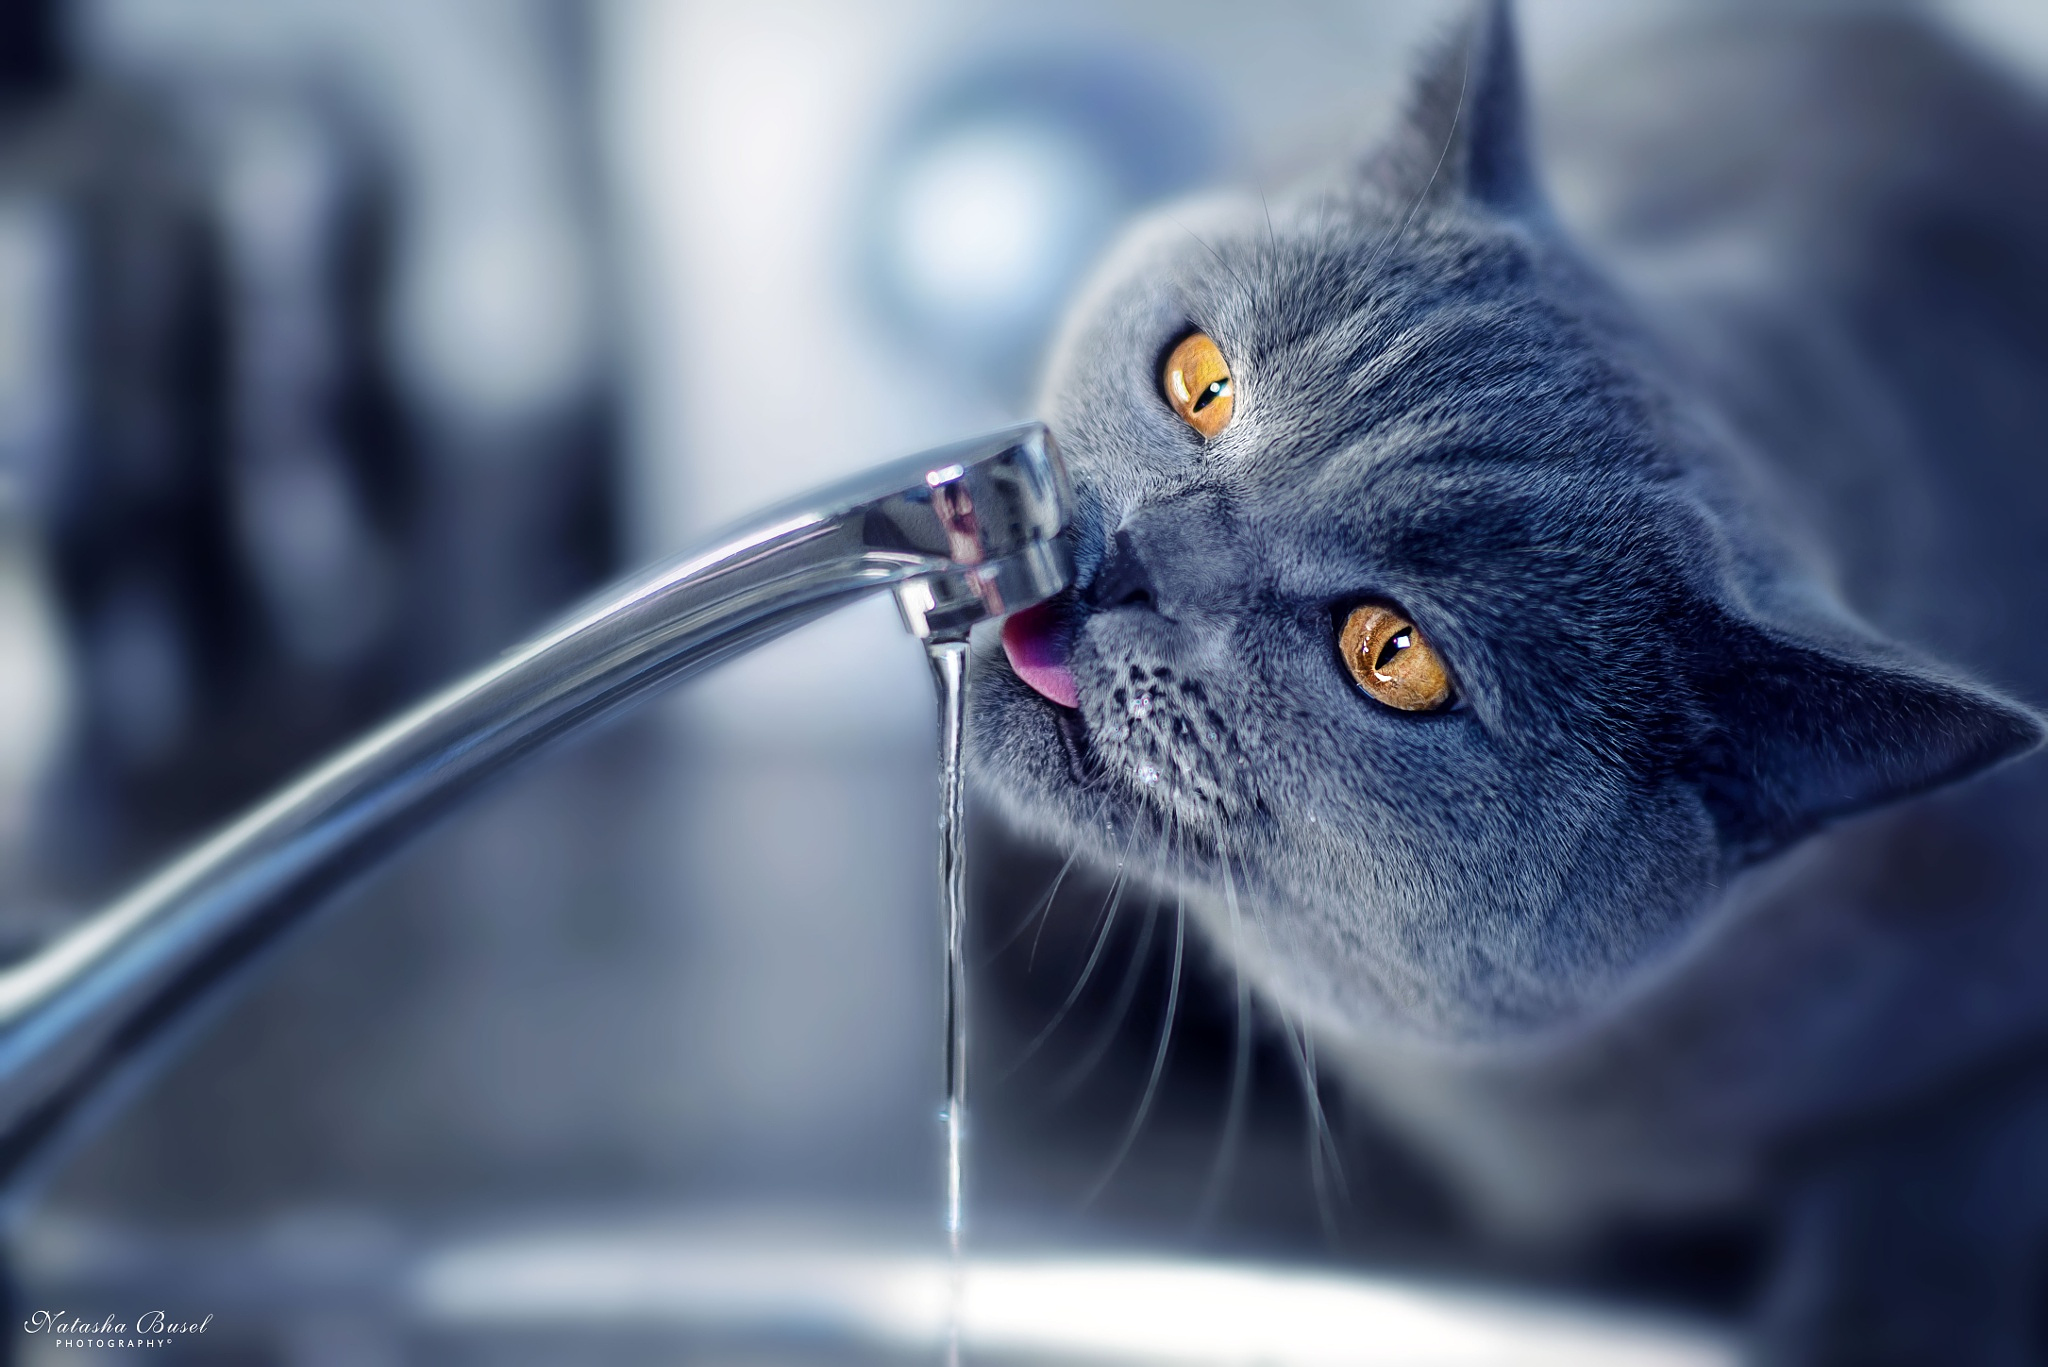 Кошка вода нос. Кот пьет воду. Кот пьет из крана. Кот и кран с водой. Кошка под краном.